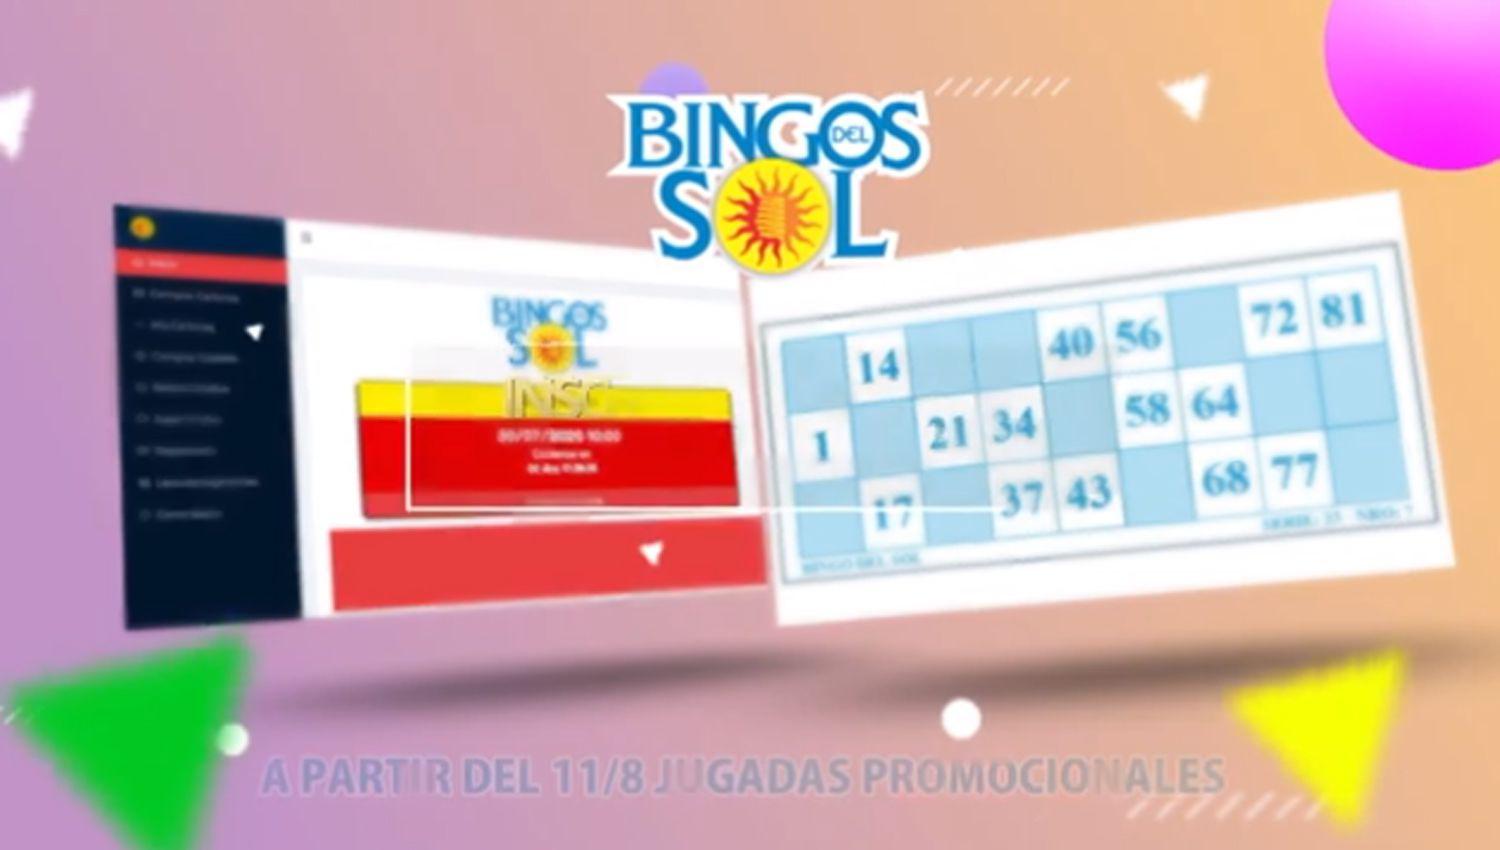 Desde este martes los santiaguentildeos podraacuten participar del Nuevo Bingo del Sol Online